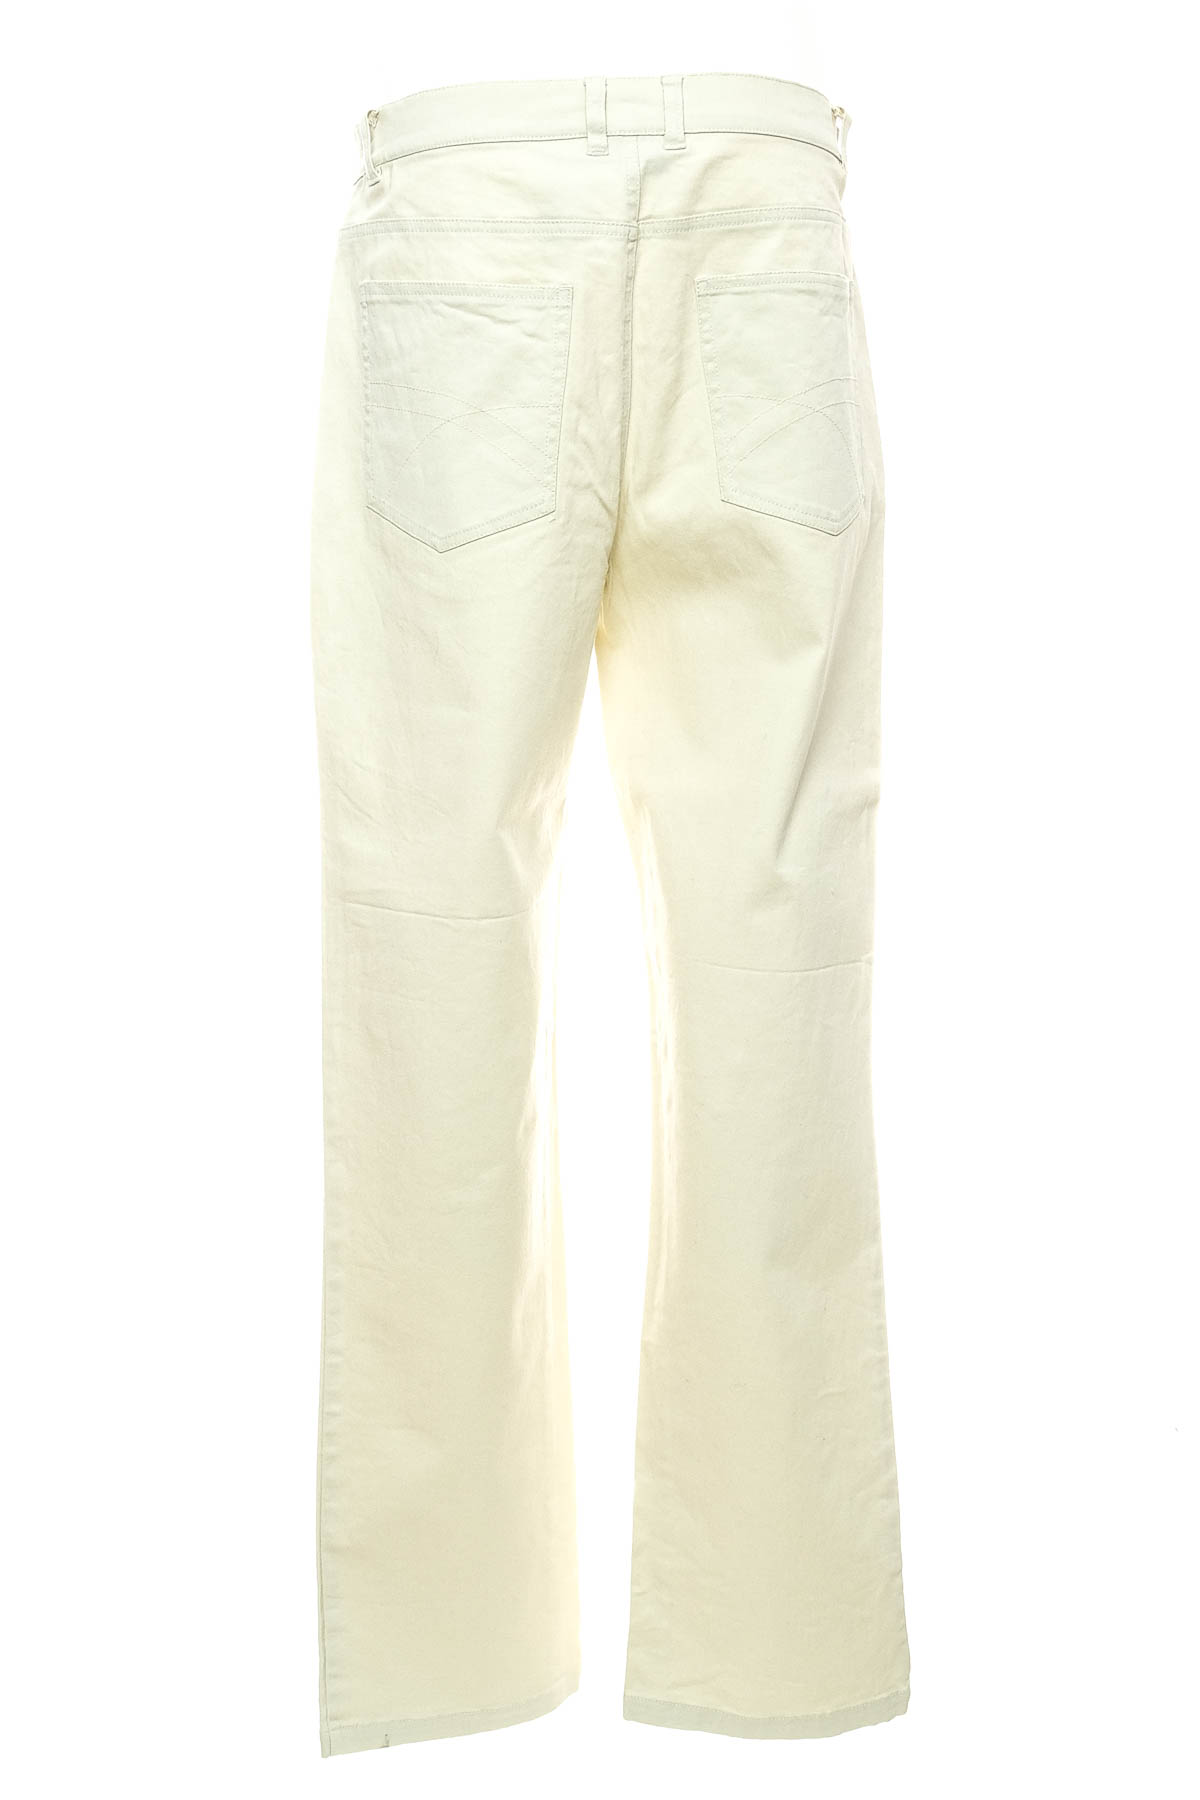 Men's jeans - Bpc Bonprix Collection - 1